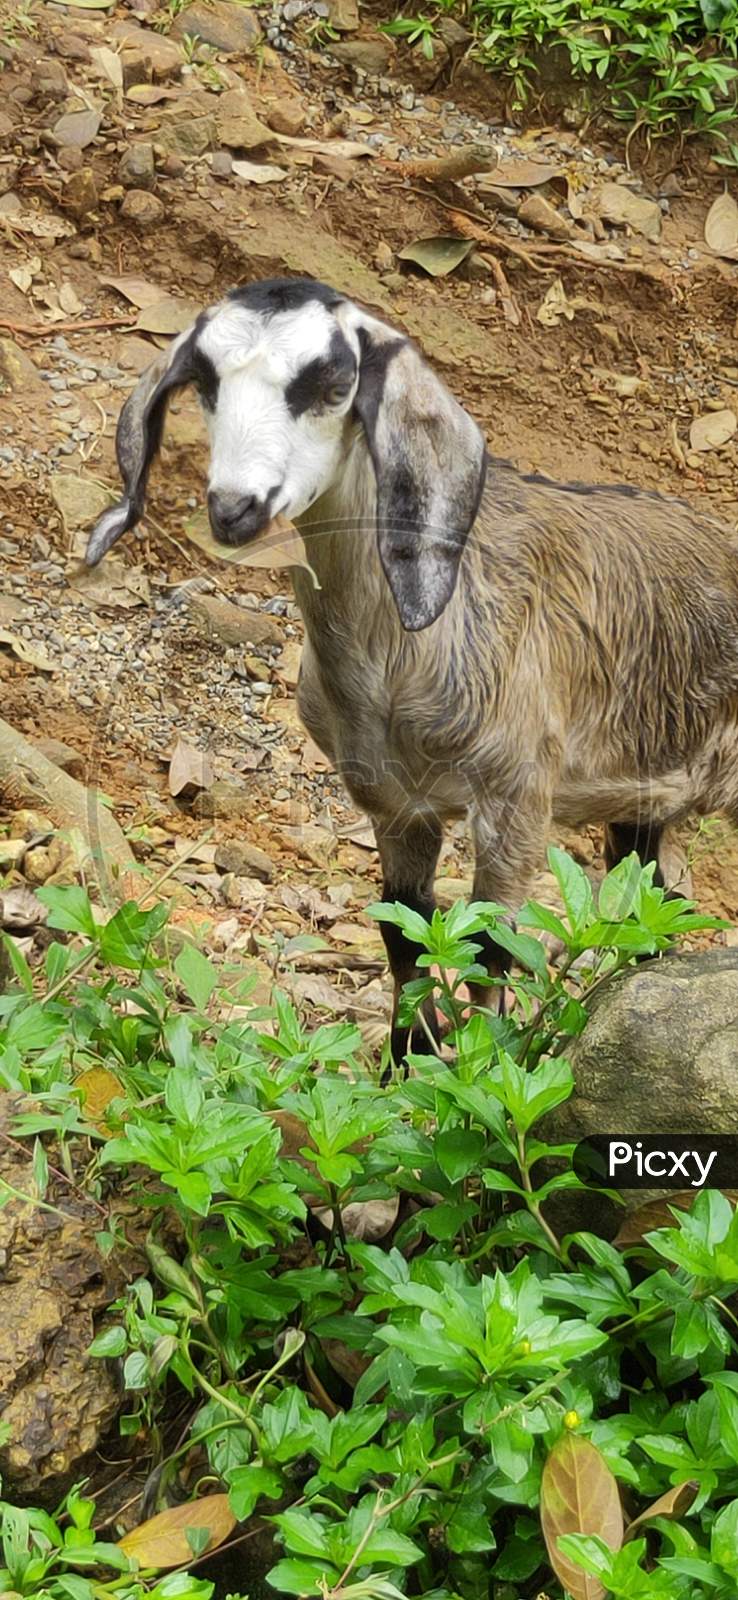 Goat eating leaf